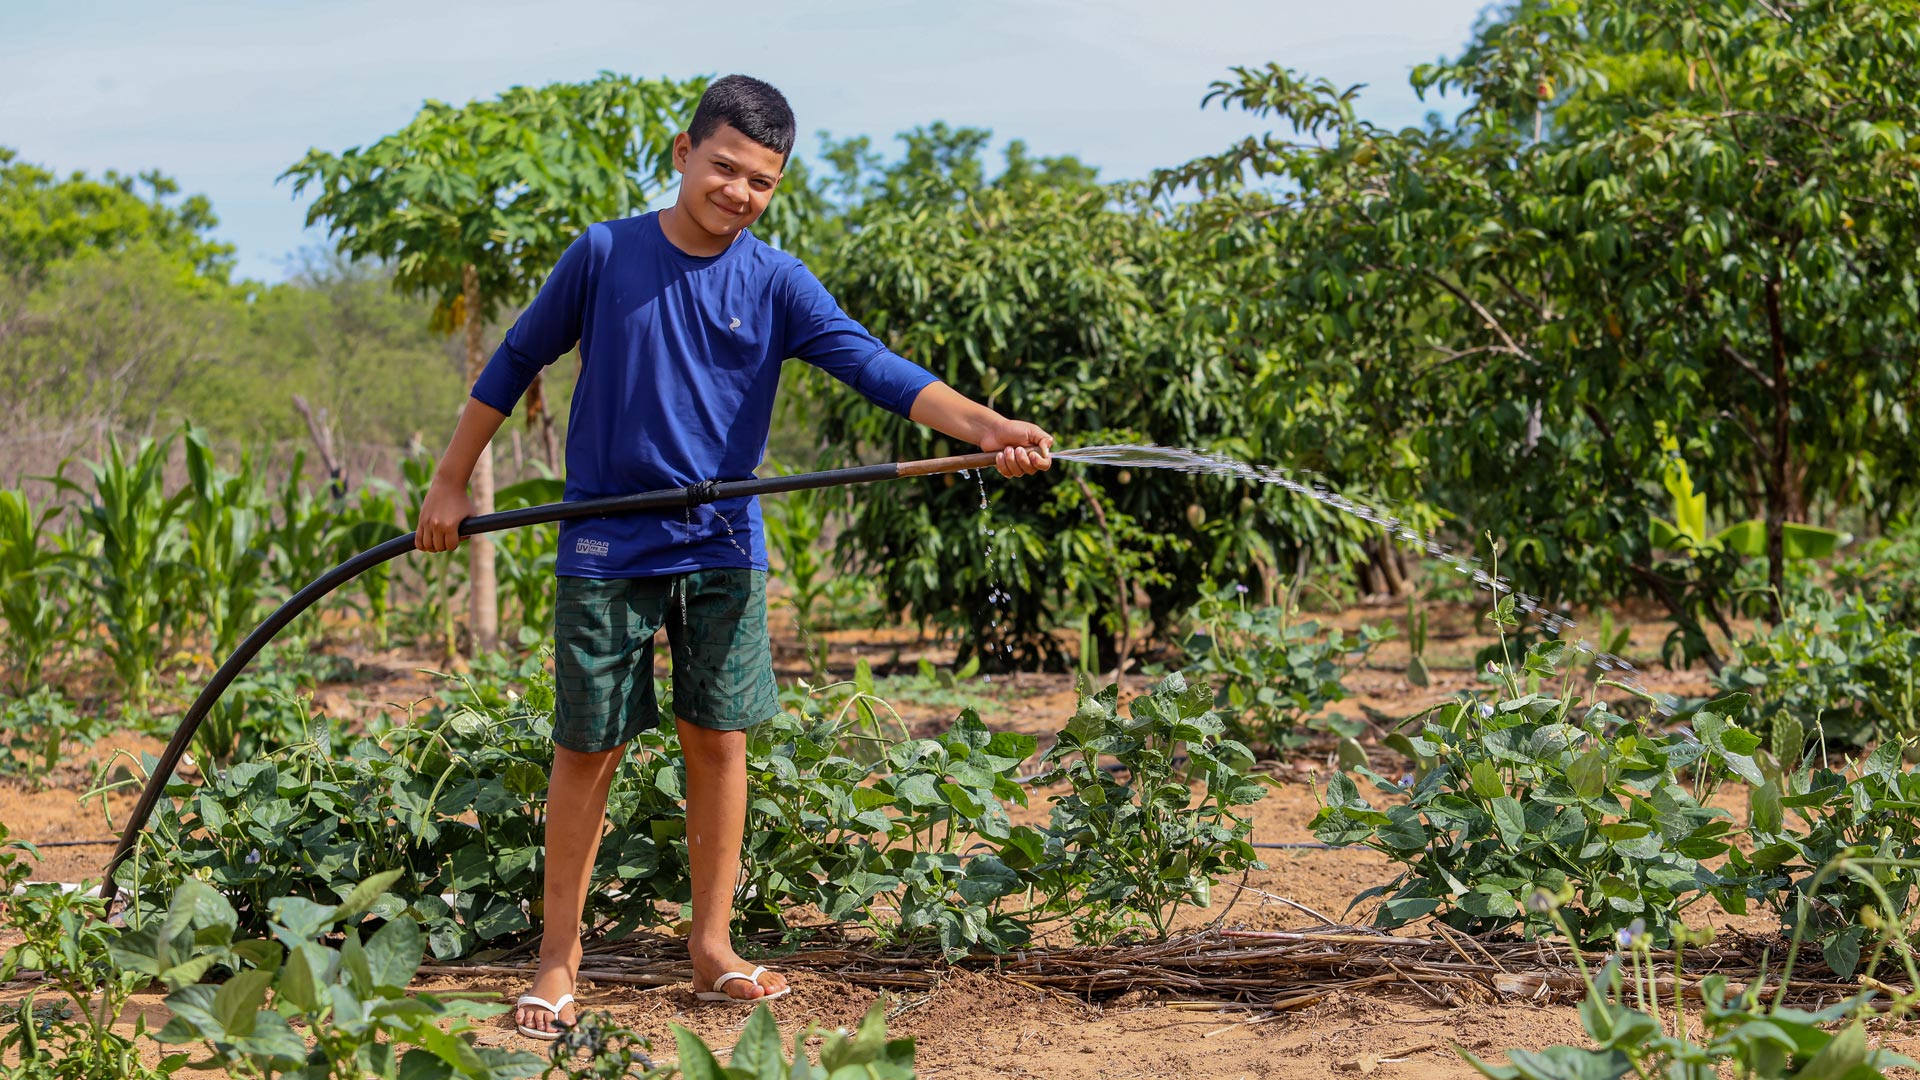 A família de Edras foi uma das 18 da região que receberam um sistema de reutilização de água para irrigar seus quintais agroecológicos. Foto: ActionAid